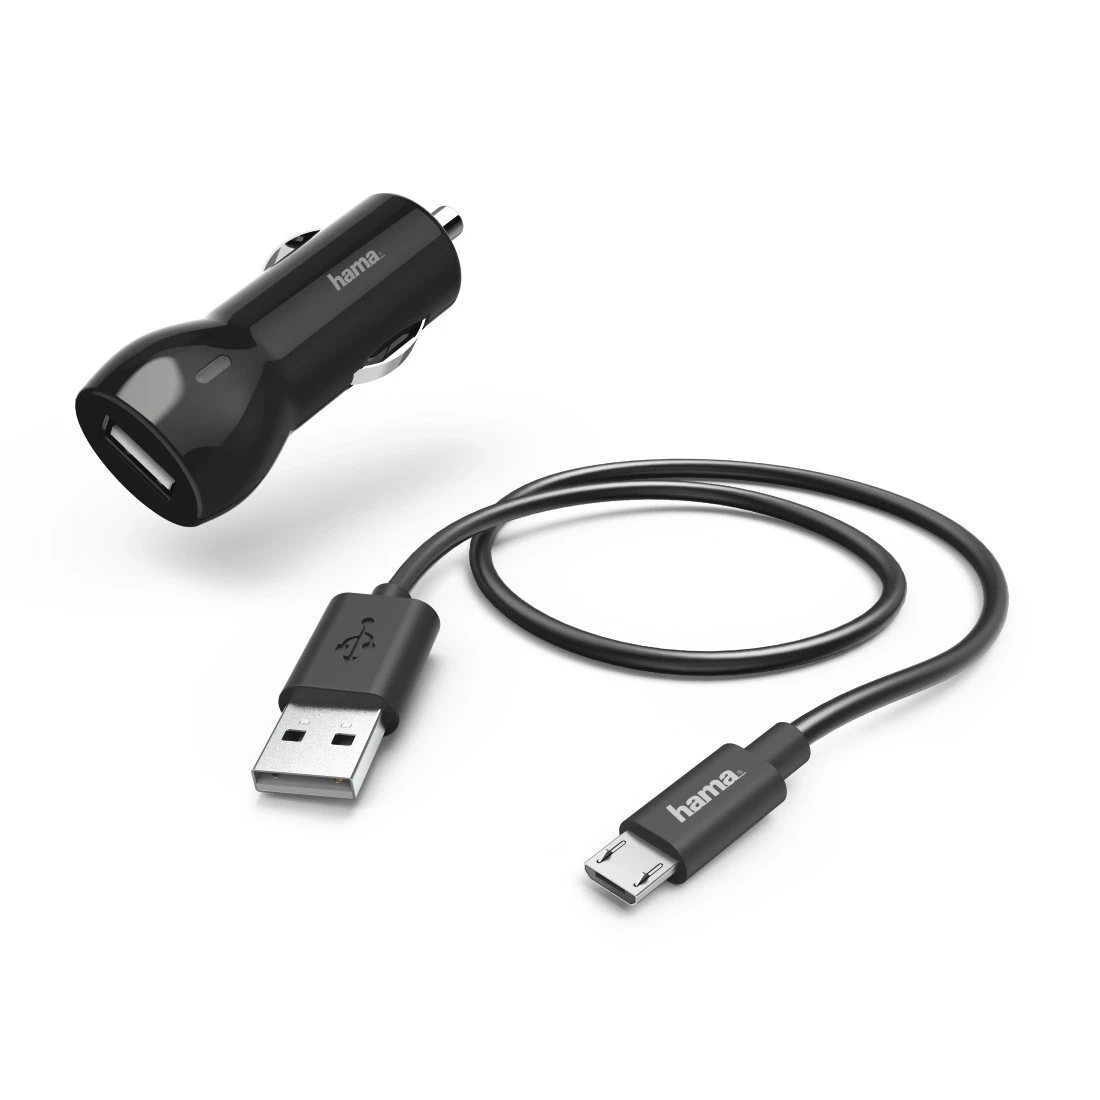 Kit chargeur smartphone allume cigare Auto + Port USB AUTO-T : la